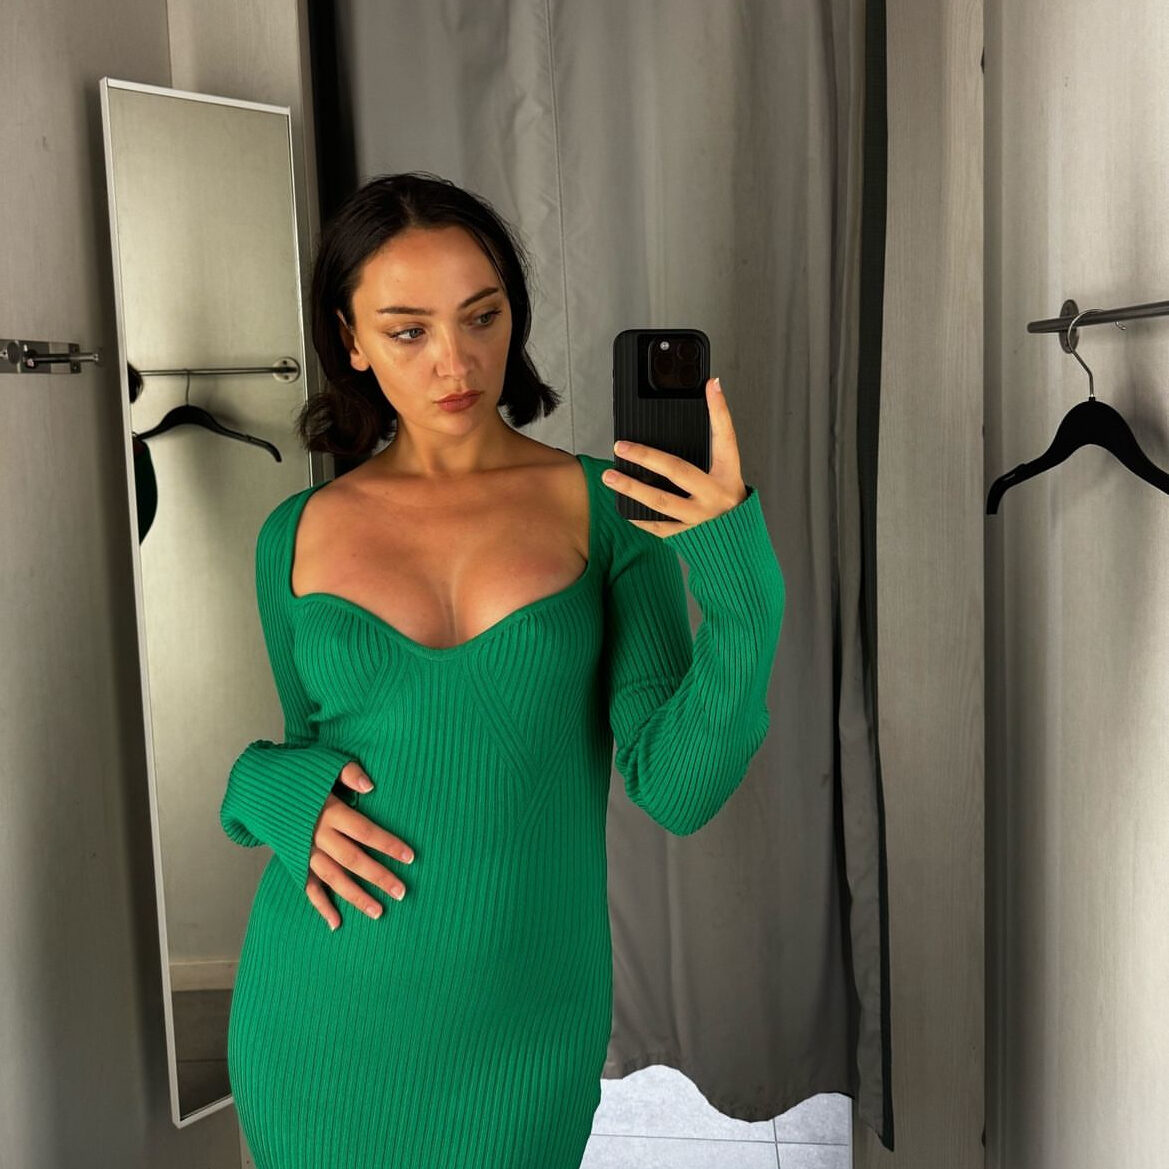 Lea Voisin prøver en grøn kjole på i et prøverum efter sin brystforstørrende operation